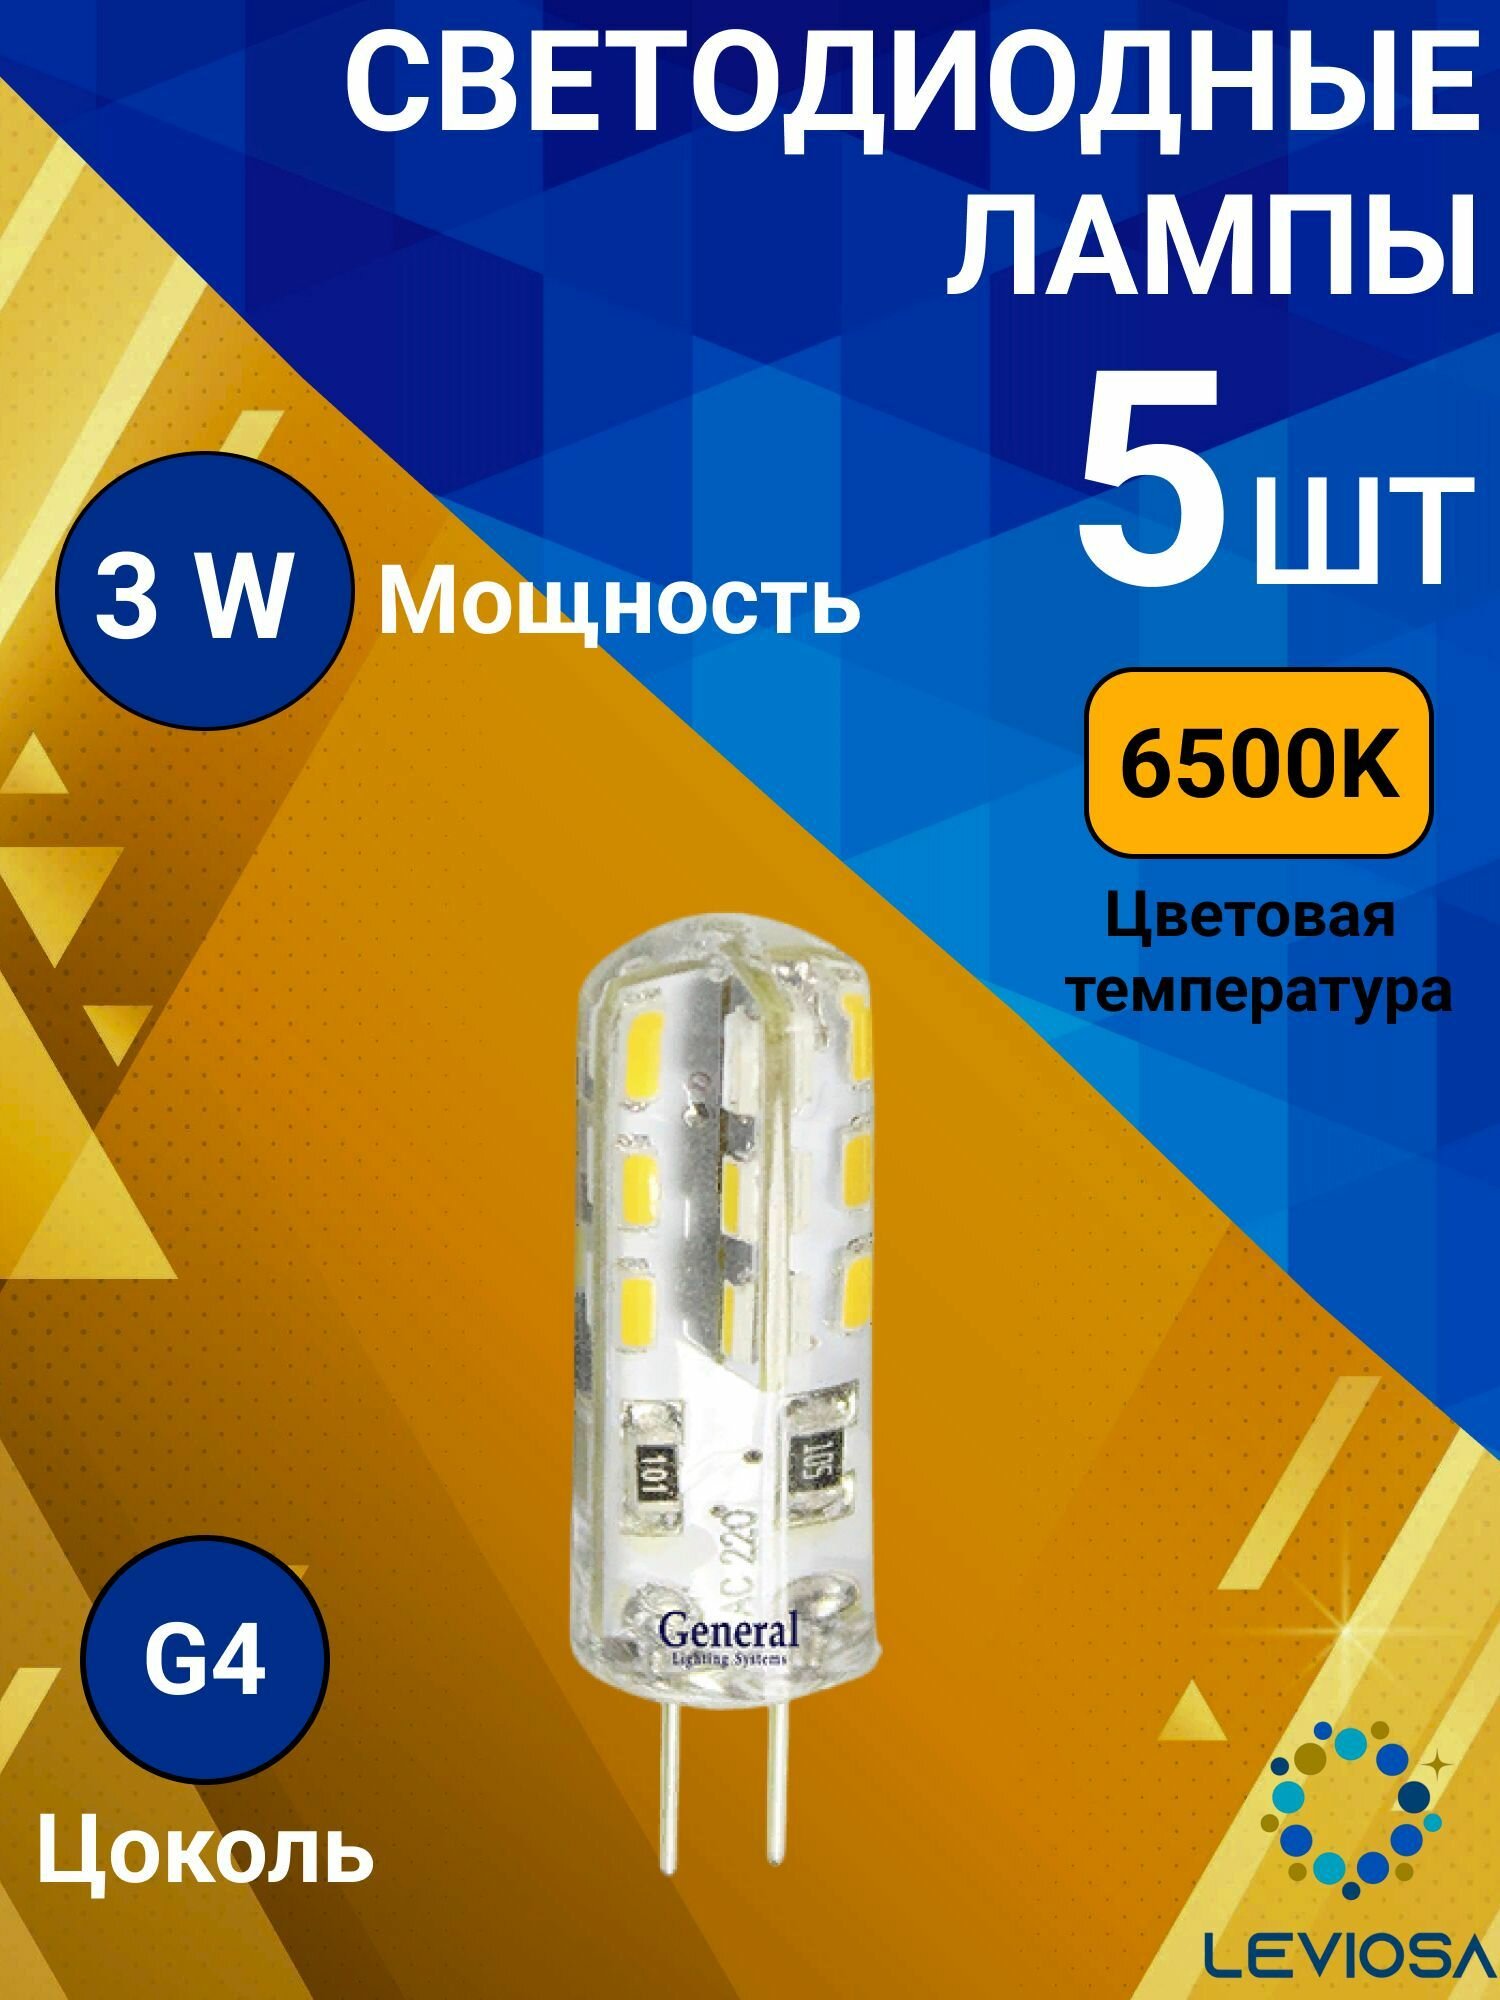 General, Лампа светодиодная, Комплект из 5 шт, 3 Вт, Цоколь G4, 6500К, Форма лампы Кукуруза